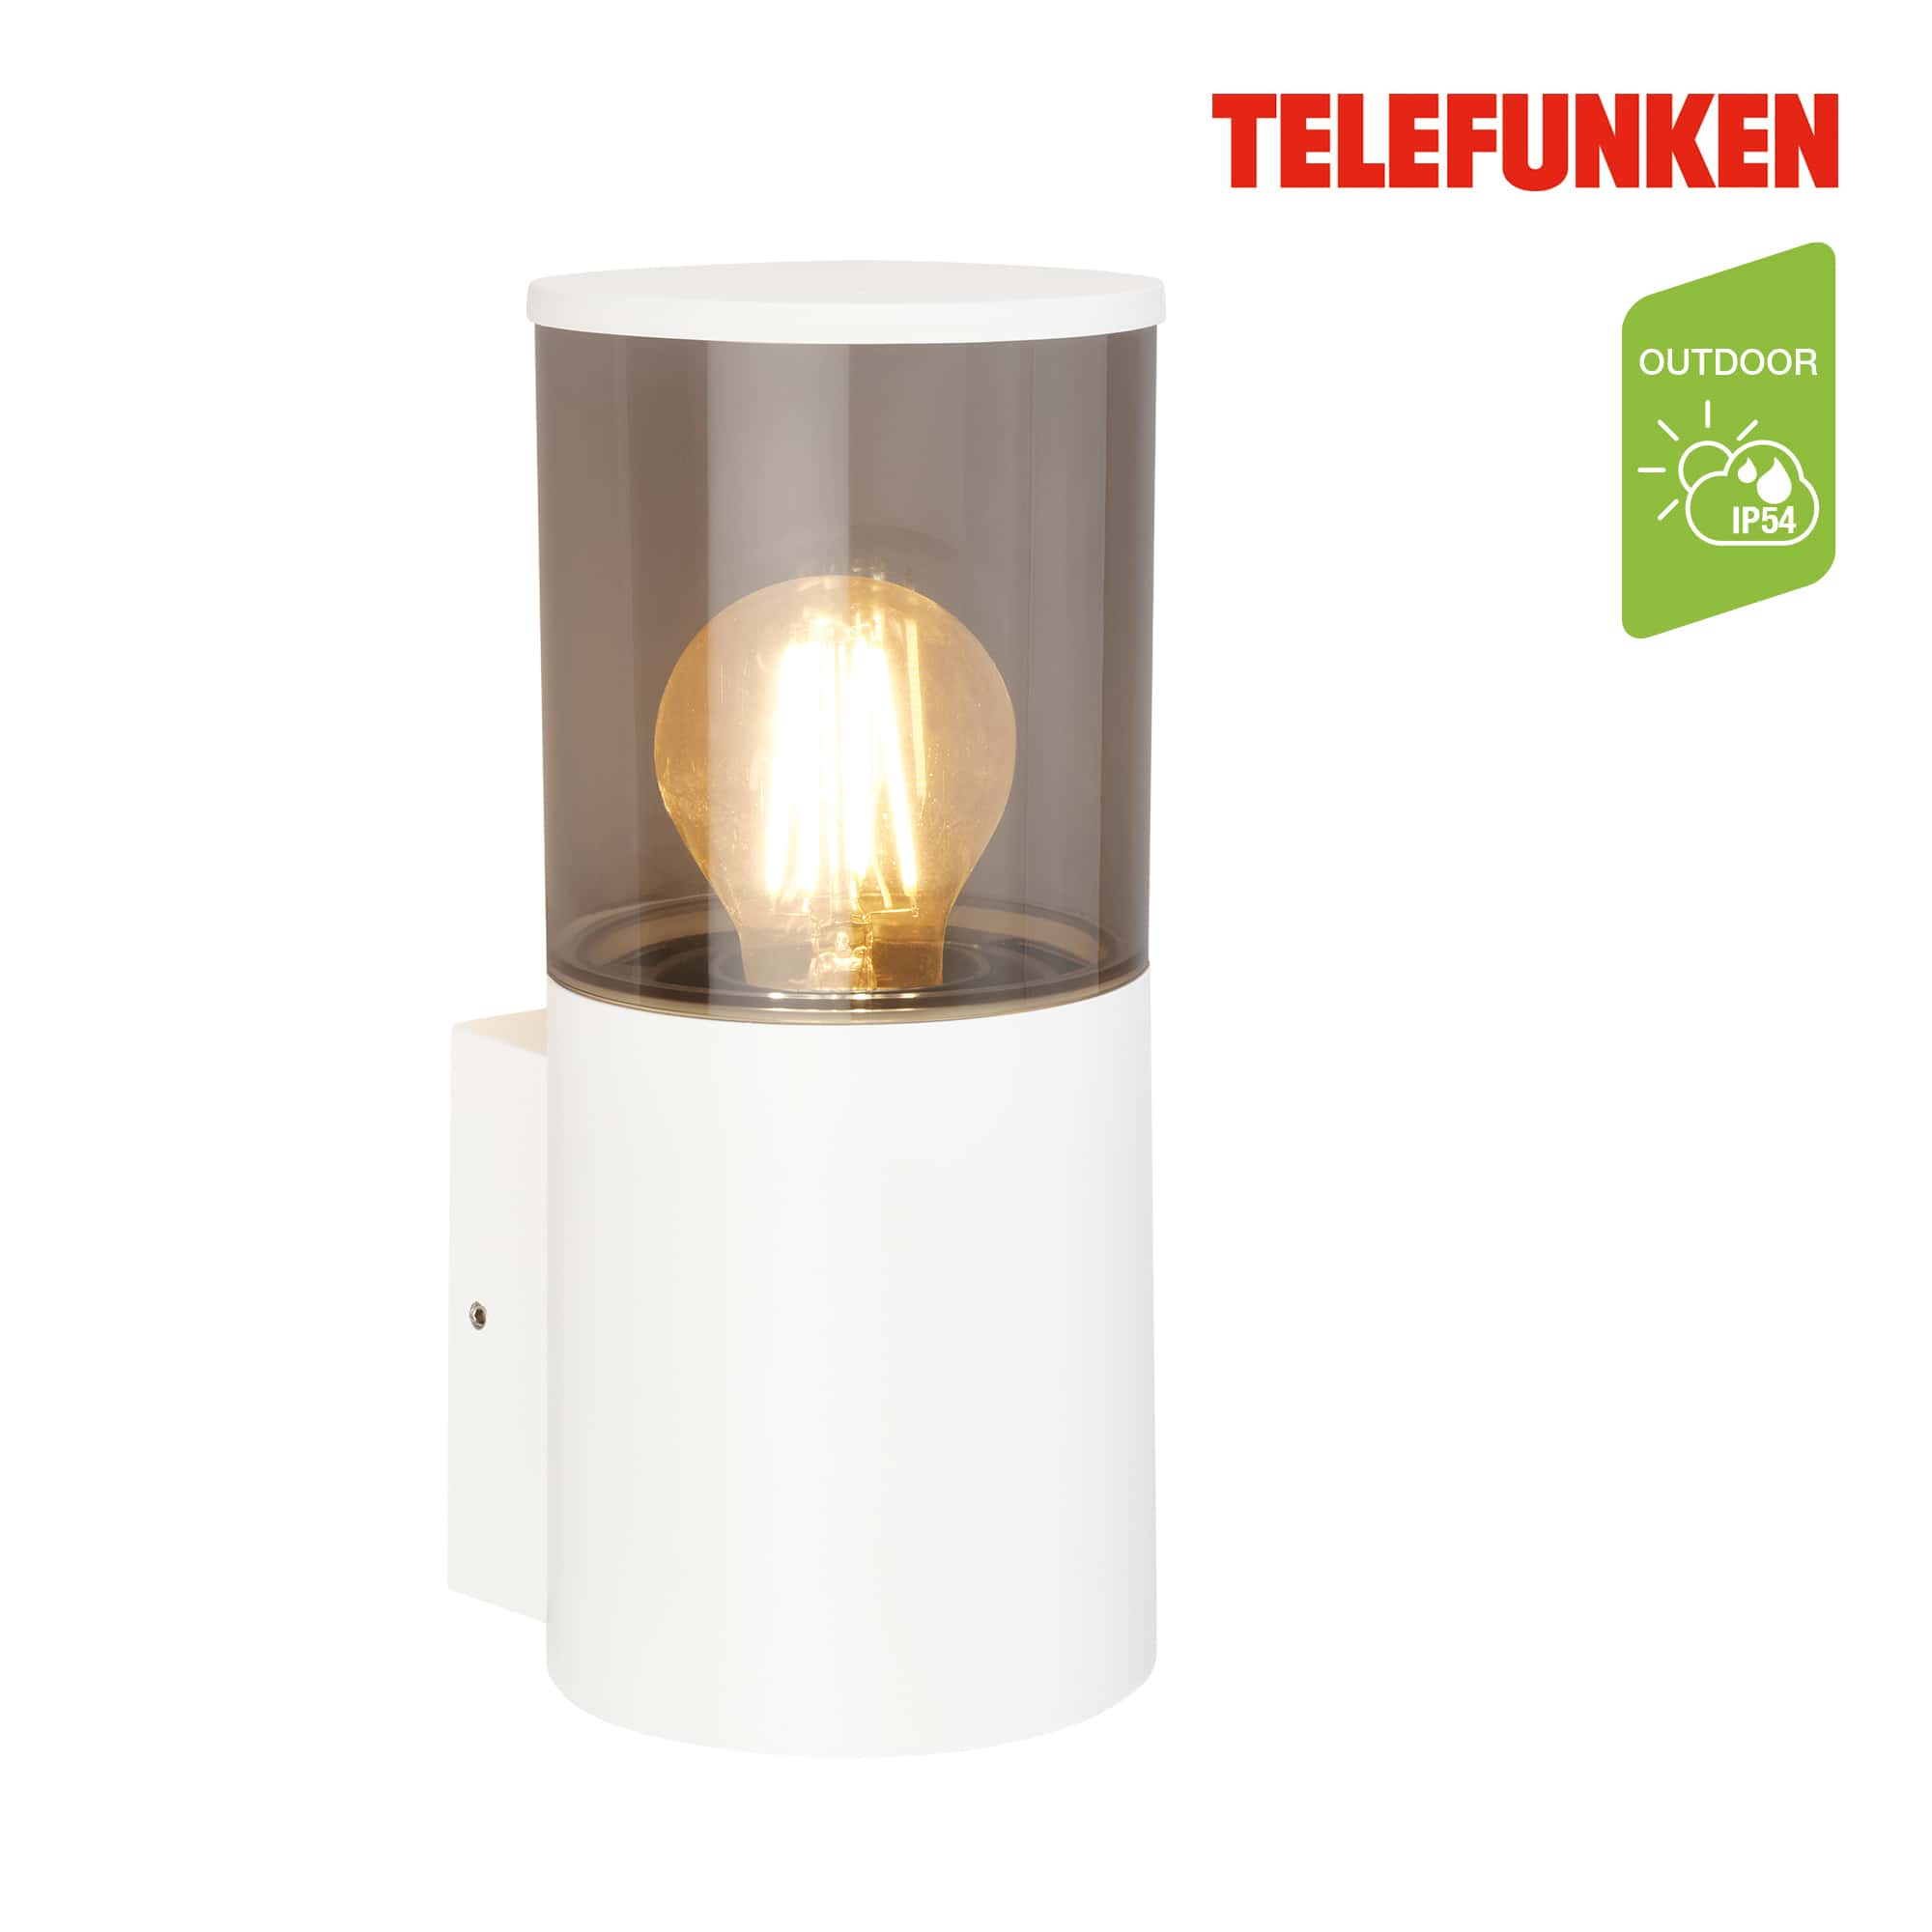 Lampada da parete Telefunken LED, protezione dagli spruzzi d'acqua e dalla polvere, On/Off